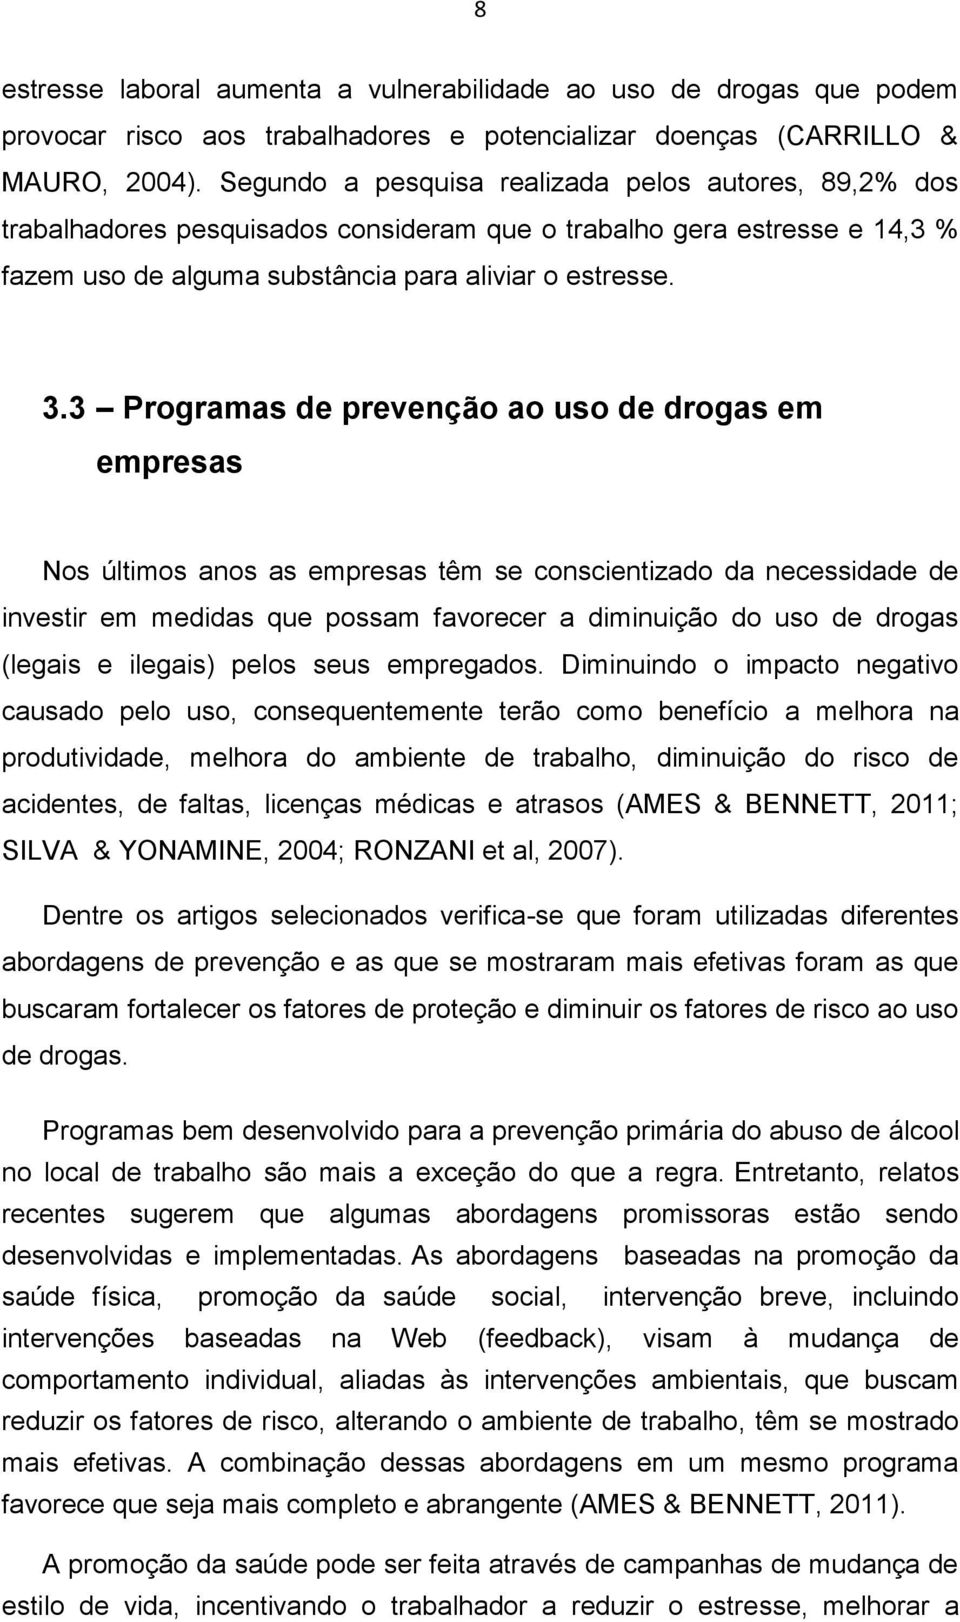 3 Programas de prevenção ao uso de drogas em empresas Nos últimos anos as empresas têm se conscientizado da necessidade de investir em medidas que possam favorecer a diminuição do uso de drogas